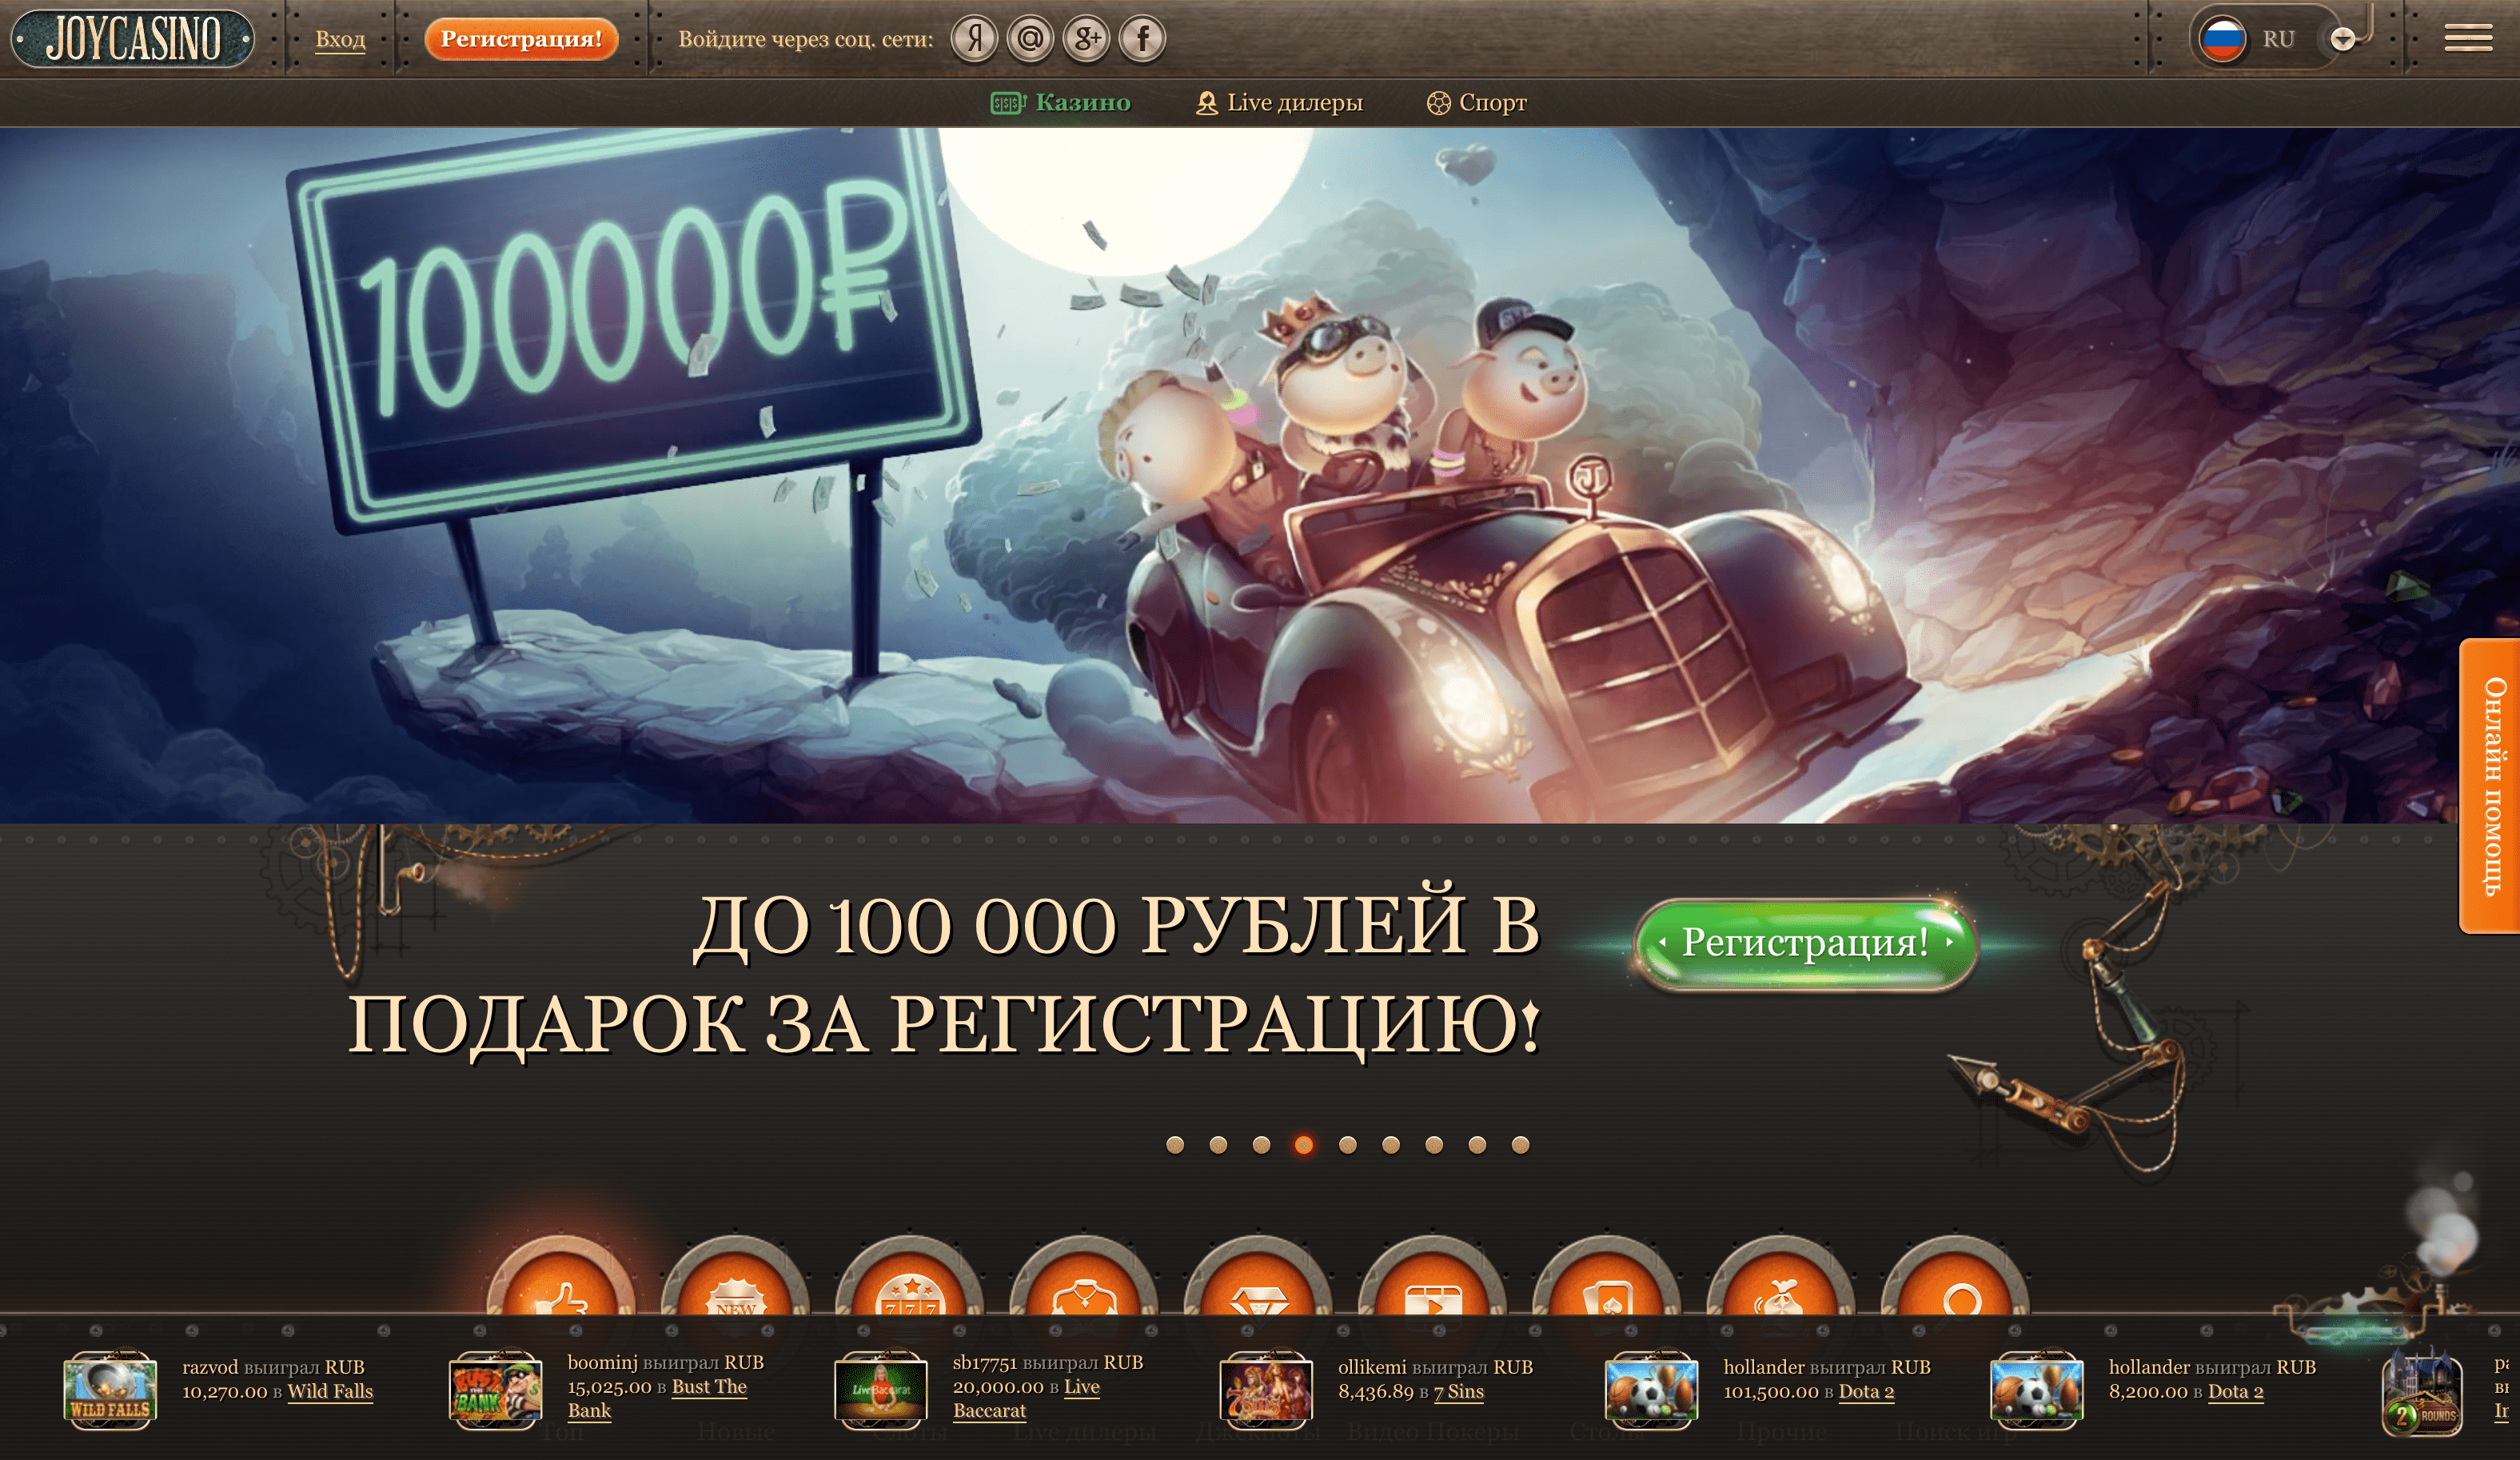 Официальный сайт онлайн казино Joycasino